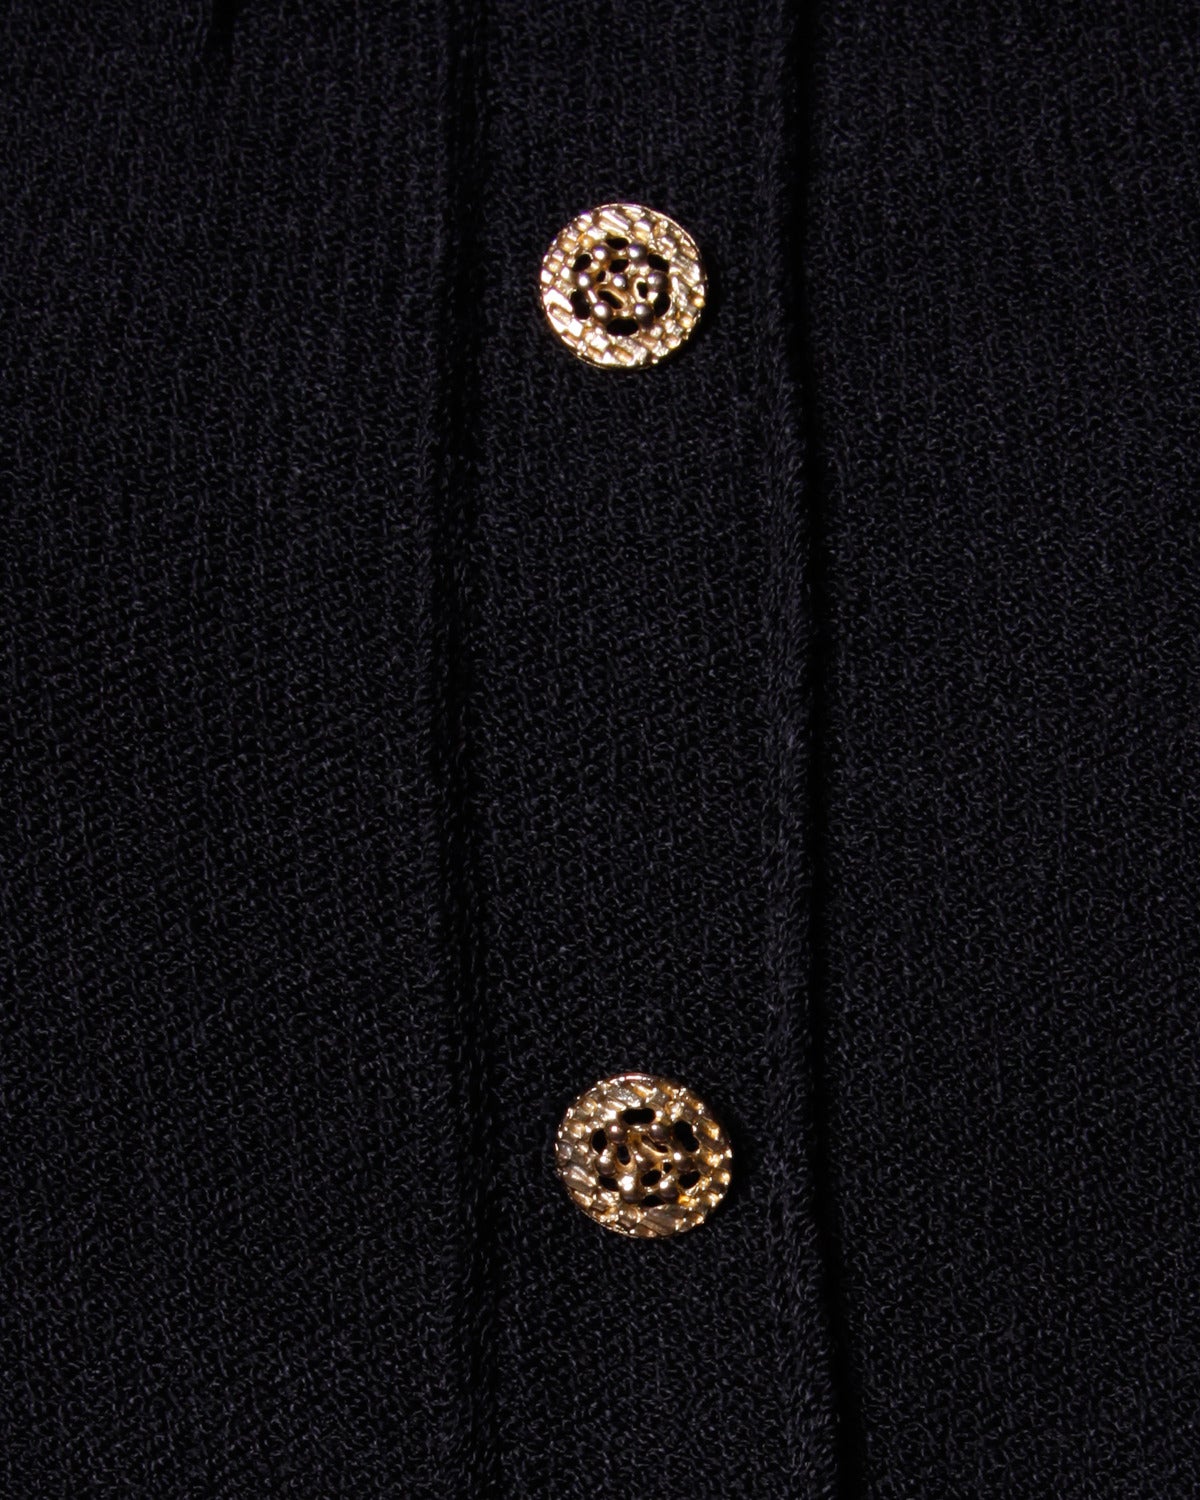 Adolfo for I. Magnin Vintage 1980s 80s Black Knit Dress with Ribbon Fringe 1